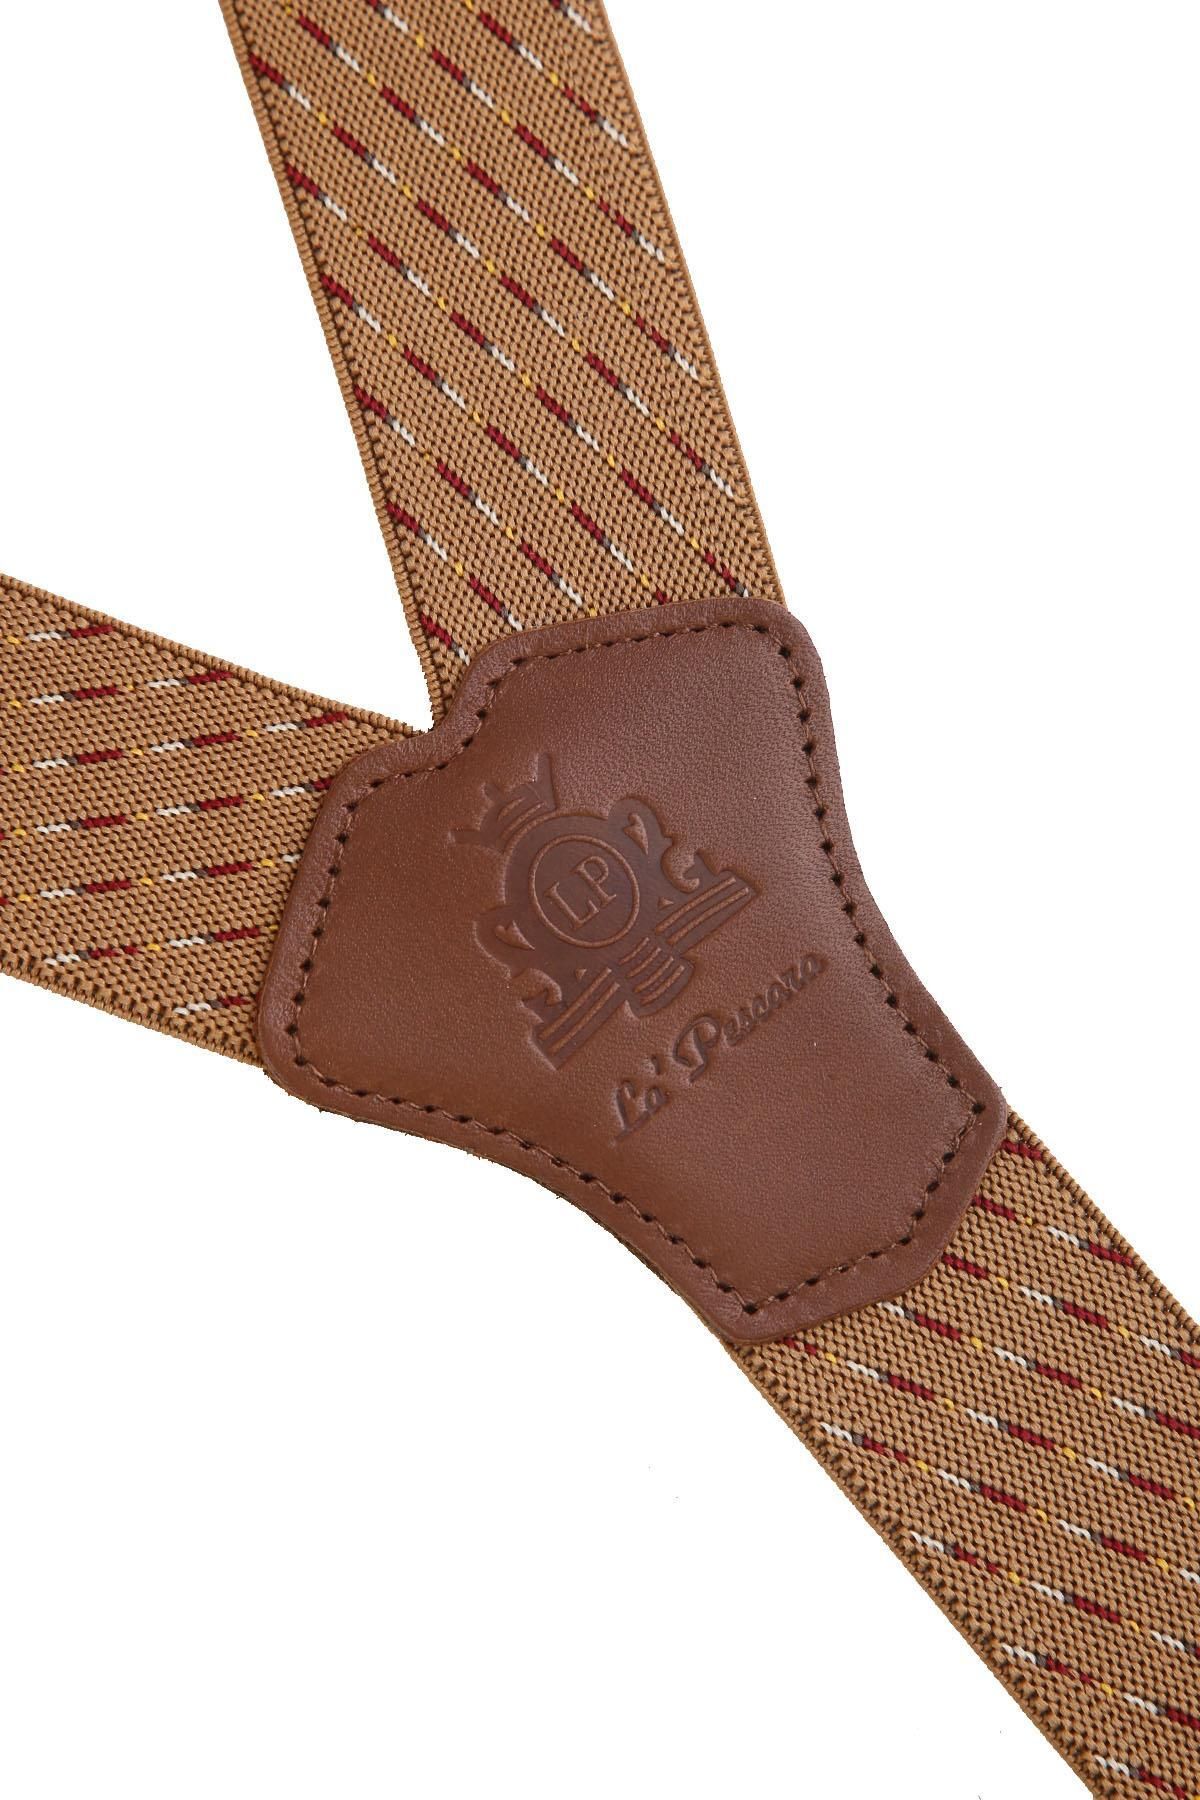 Kravatkolik Bej Deri Bağlantılı Düğme Delikli Jakarlı Pantolon Askısı PAN167